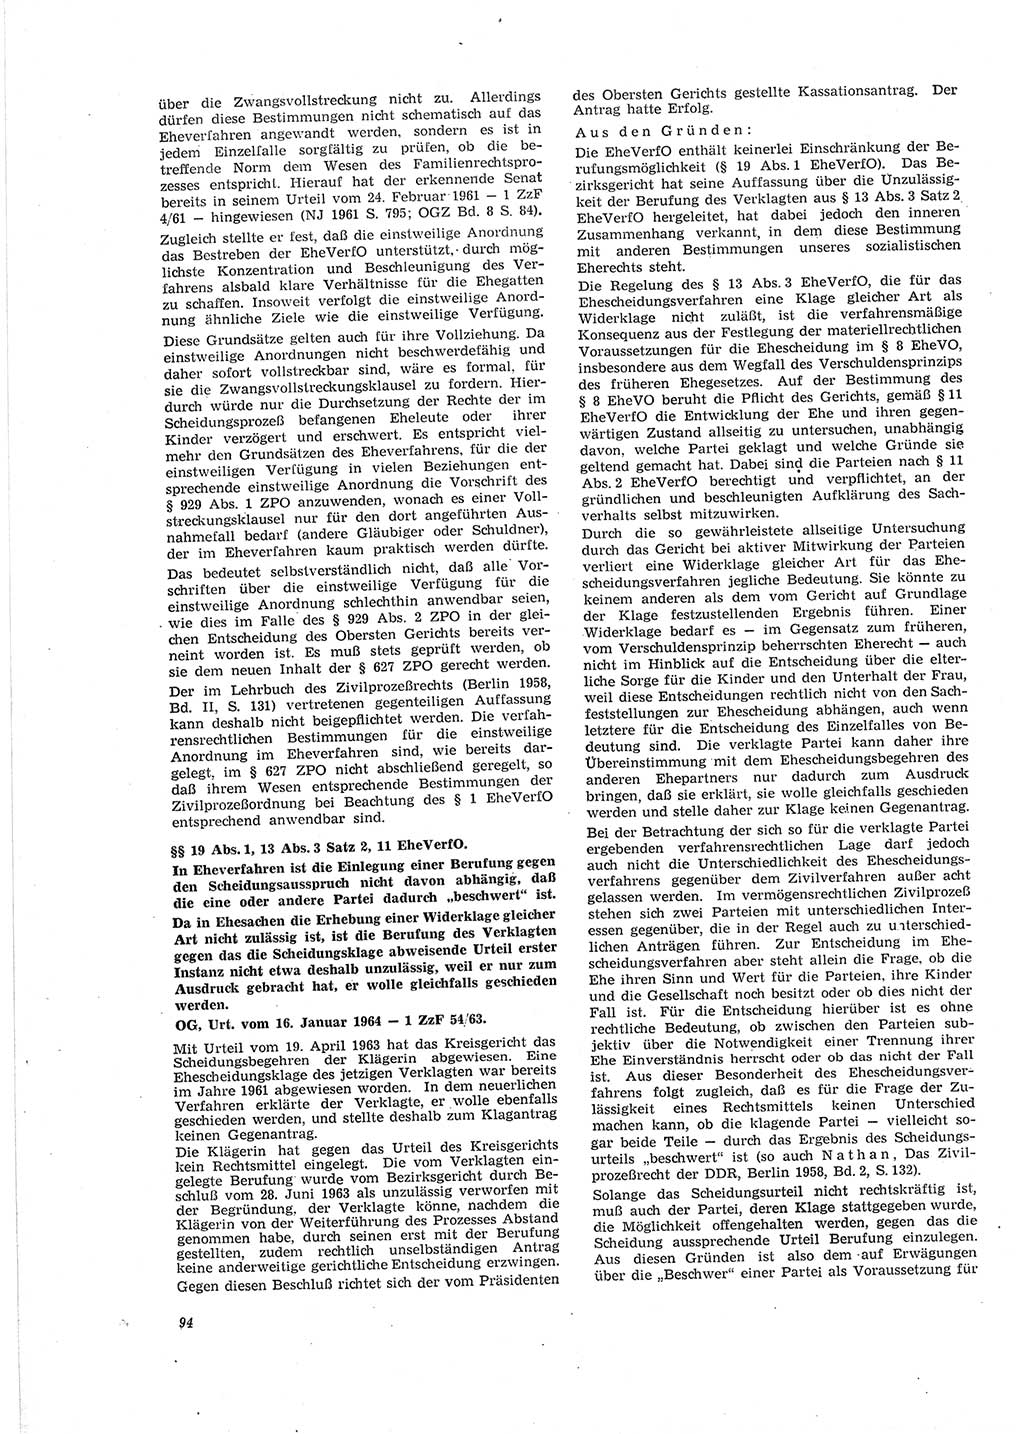 Neue Justiz (NJ), Zeitschrift für Recht und Rechtswissenschaft [Deutsche Demokratische Republik (DDR)], 19. Jahrgang 1965, Seite 94 (NJ DDR 1965, S. 94)